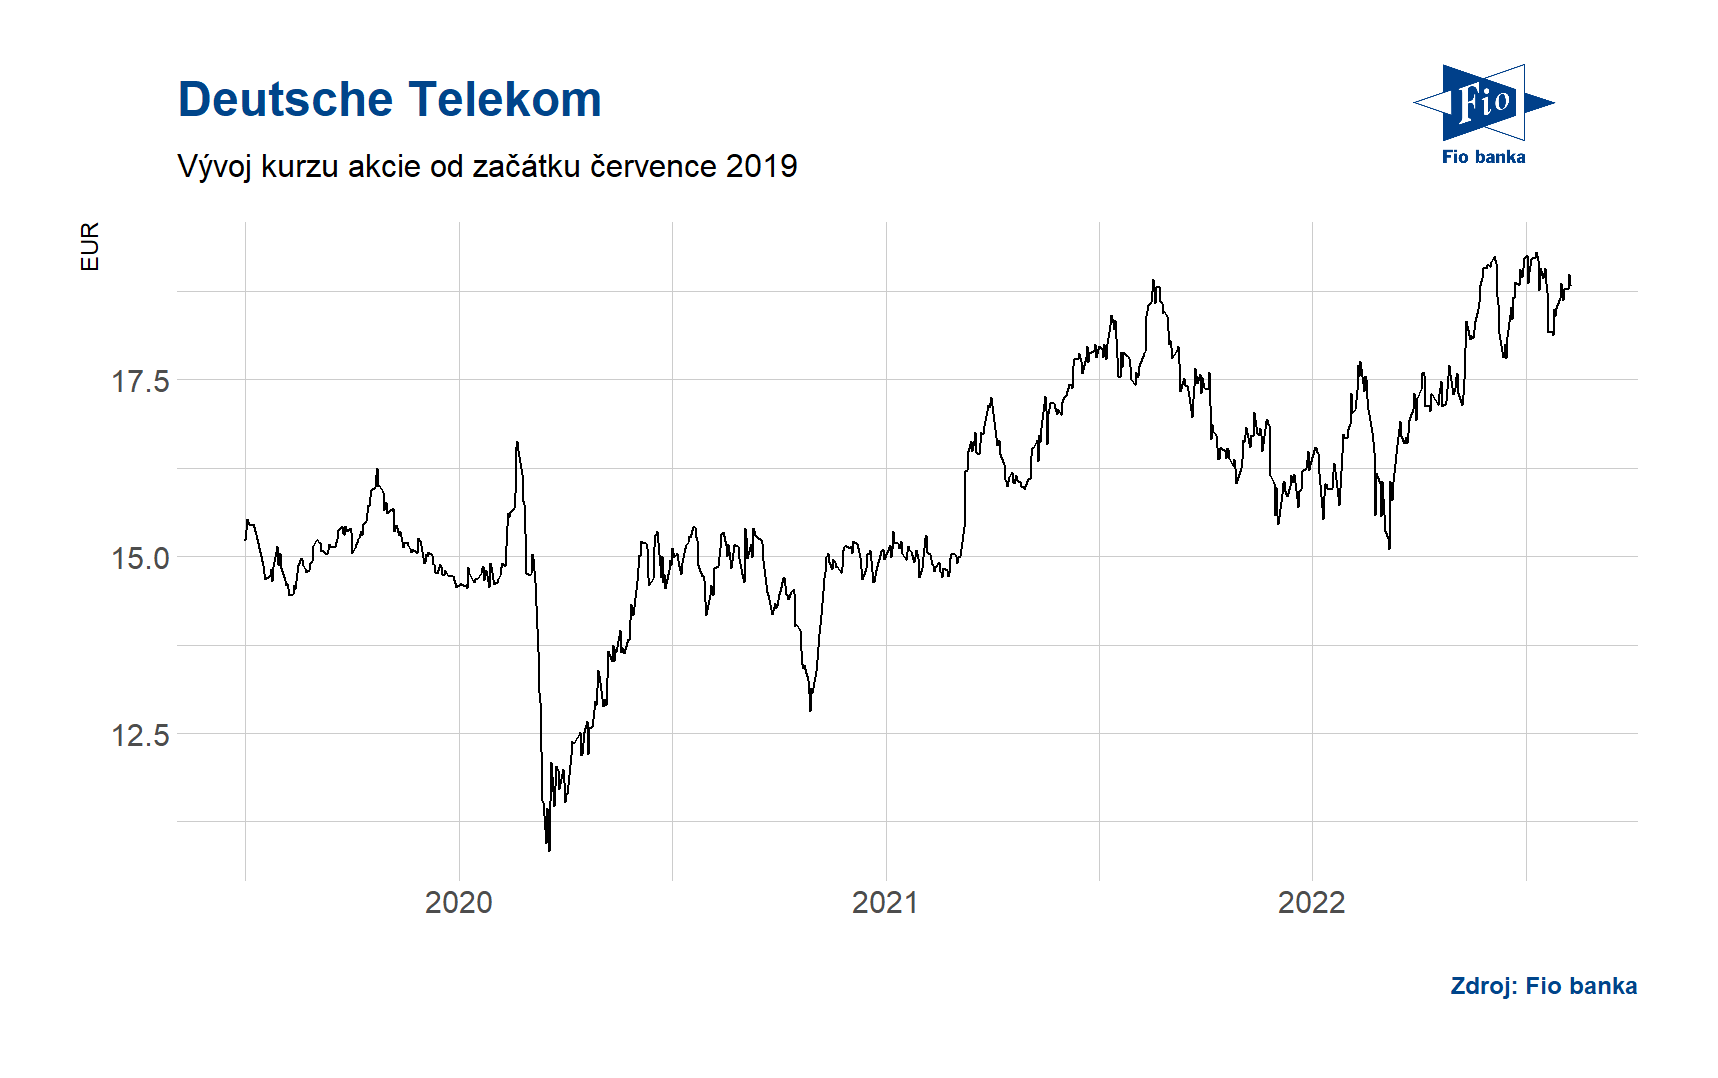 Vývoj ceny akcie společnosti Deutsche Telekom